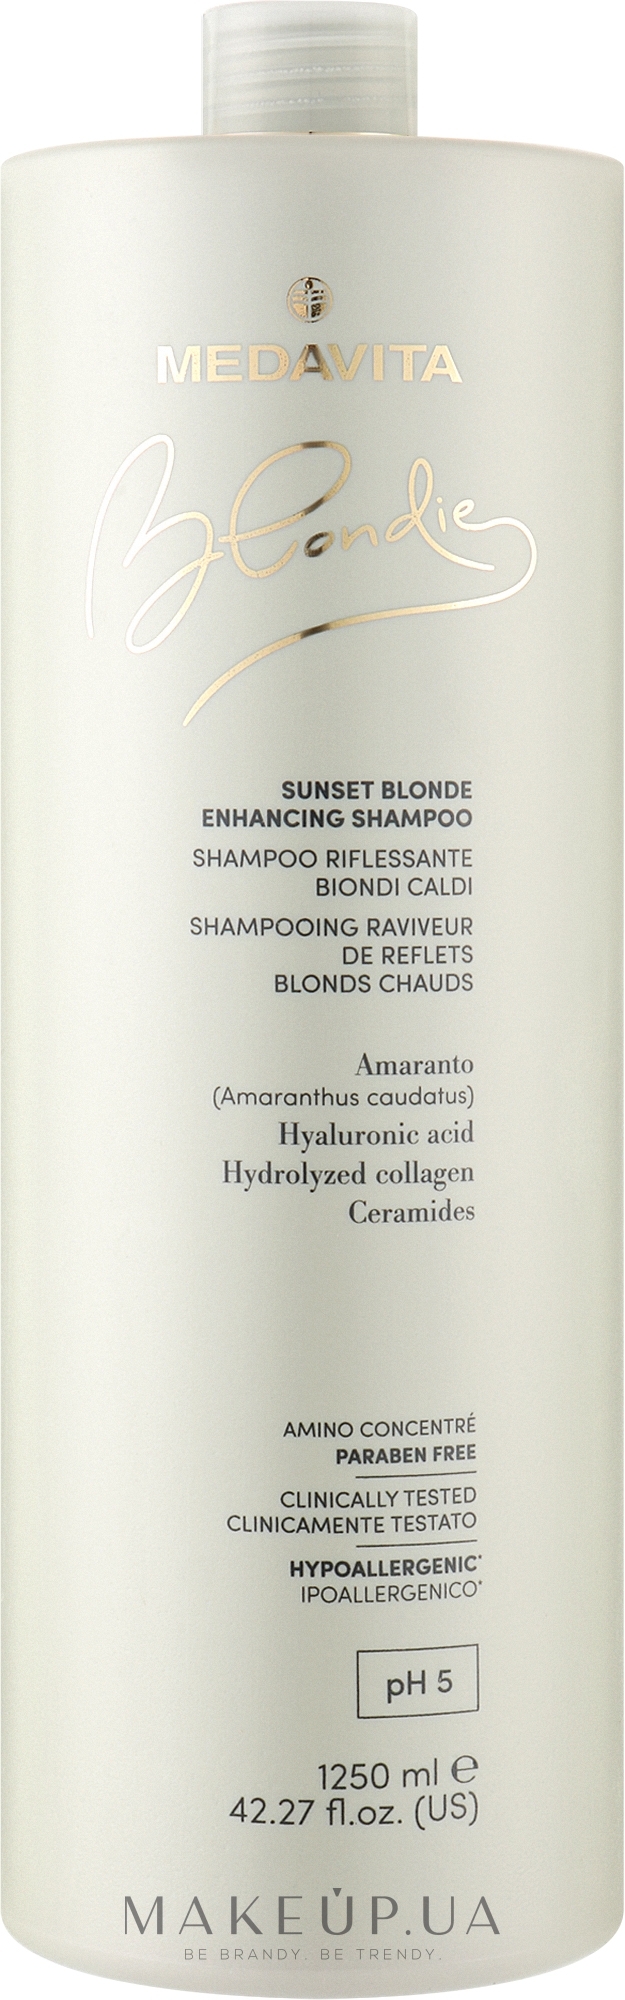 Зміцнювальний шампунь для посилення теплих відтінків блонду - Medavita Blondie Sunset Blonde Enhancing Shampoo — фото 1250ml